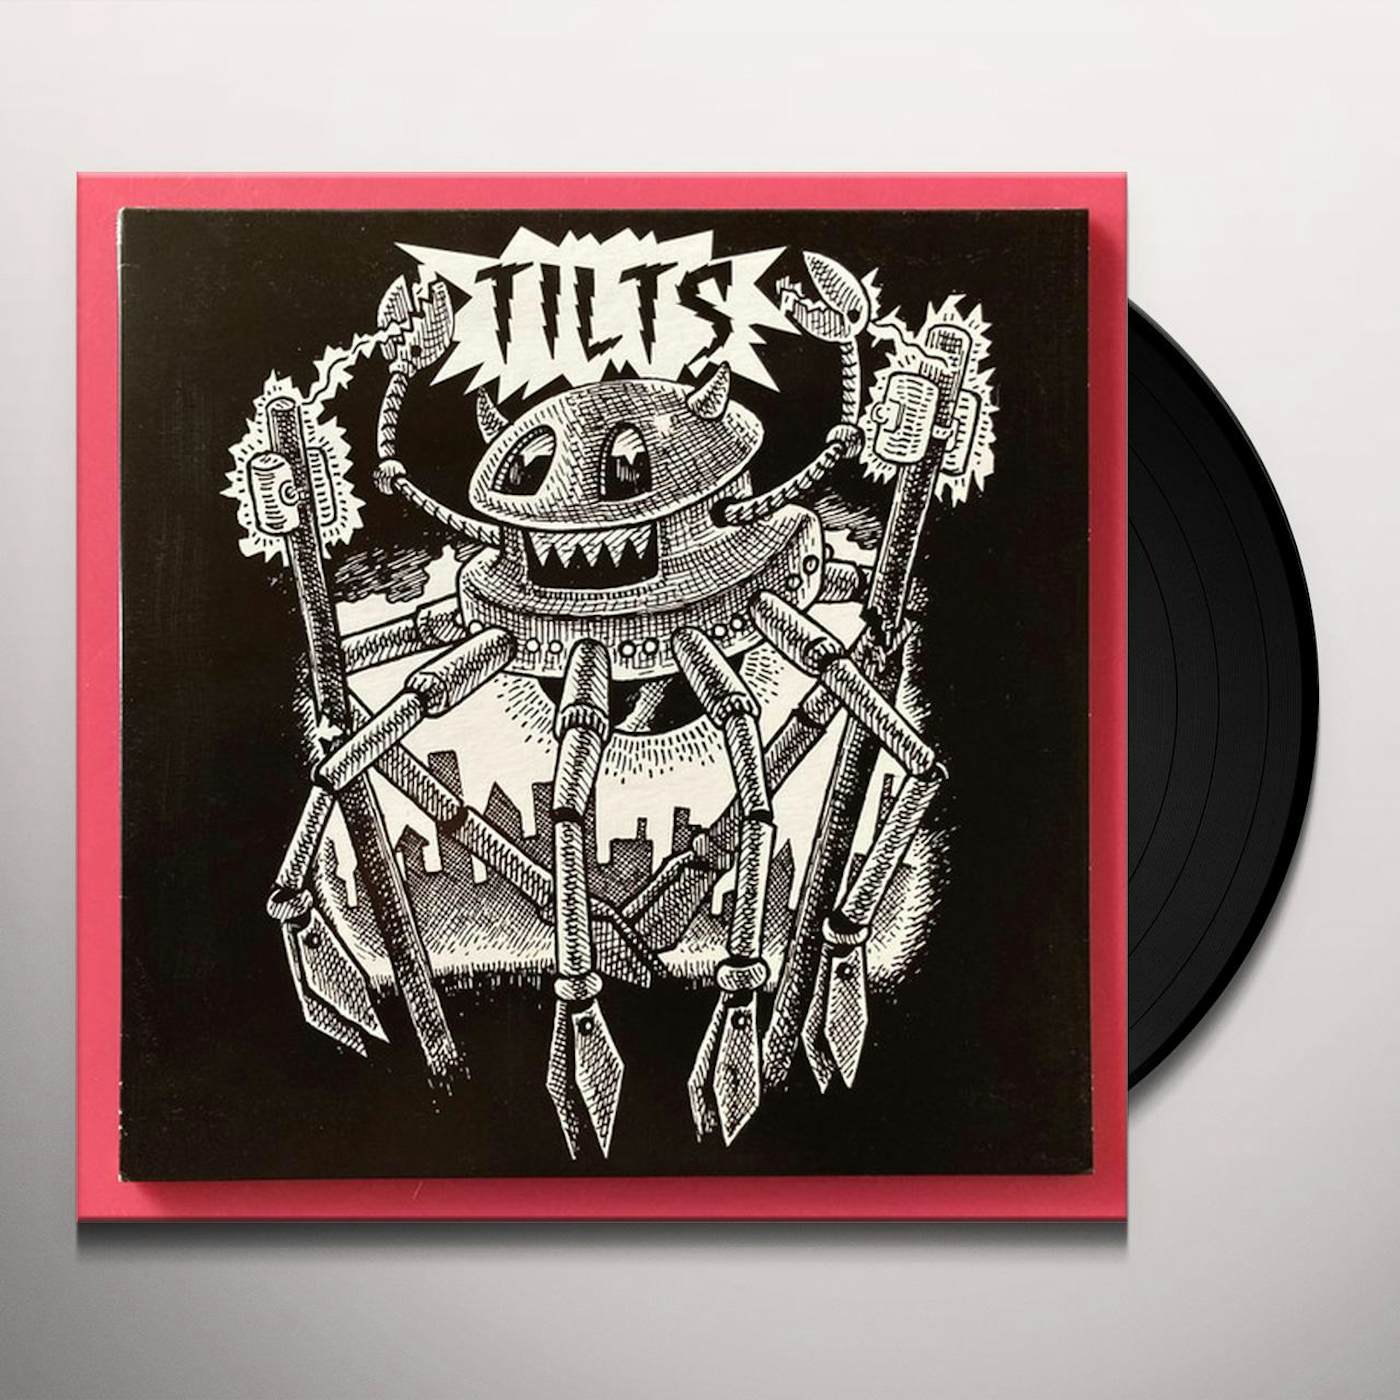 Tilts S/T Vinyl Record